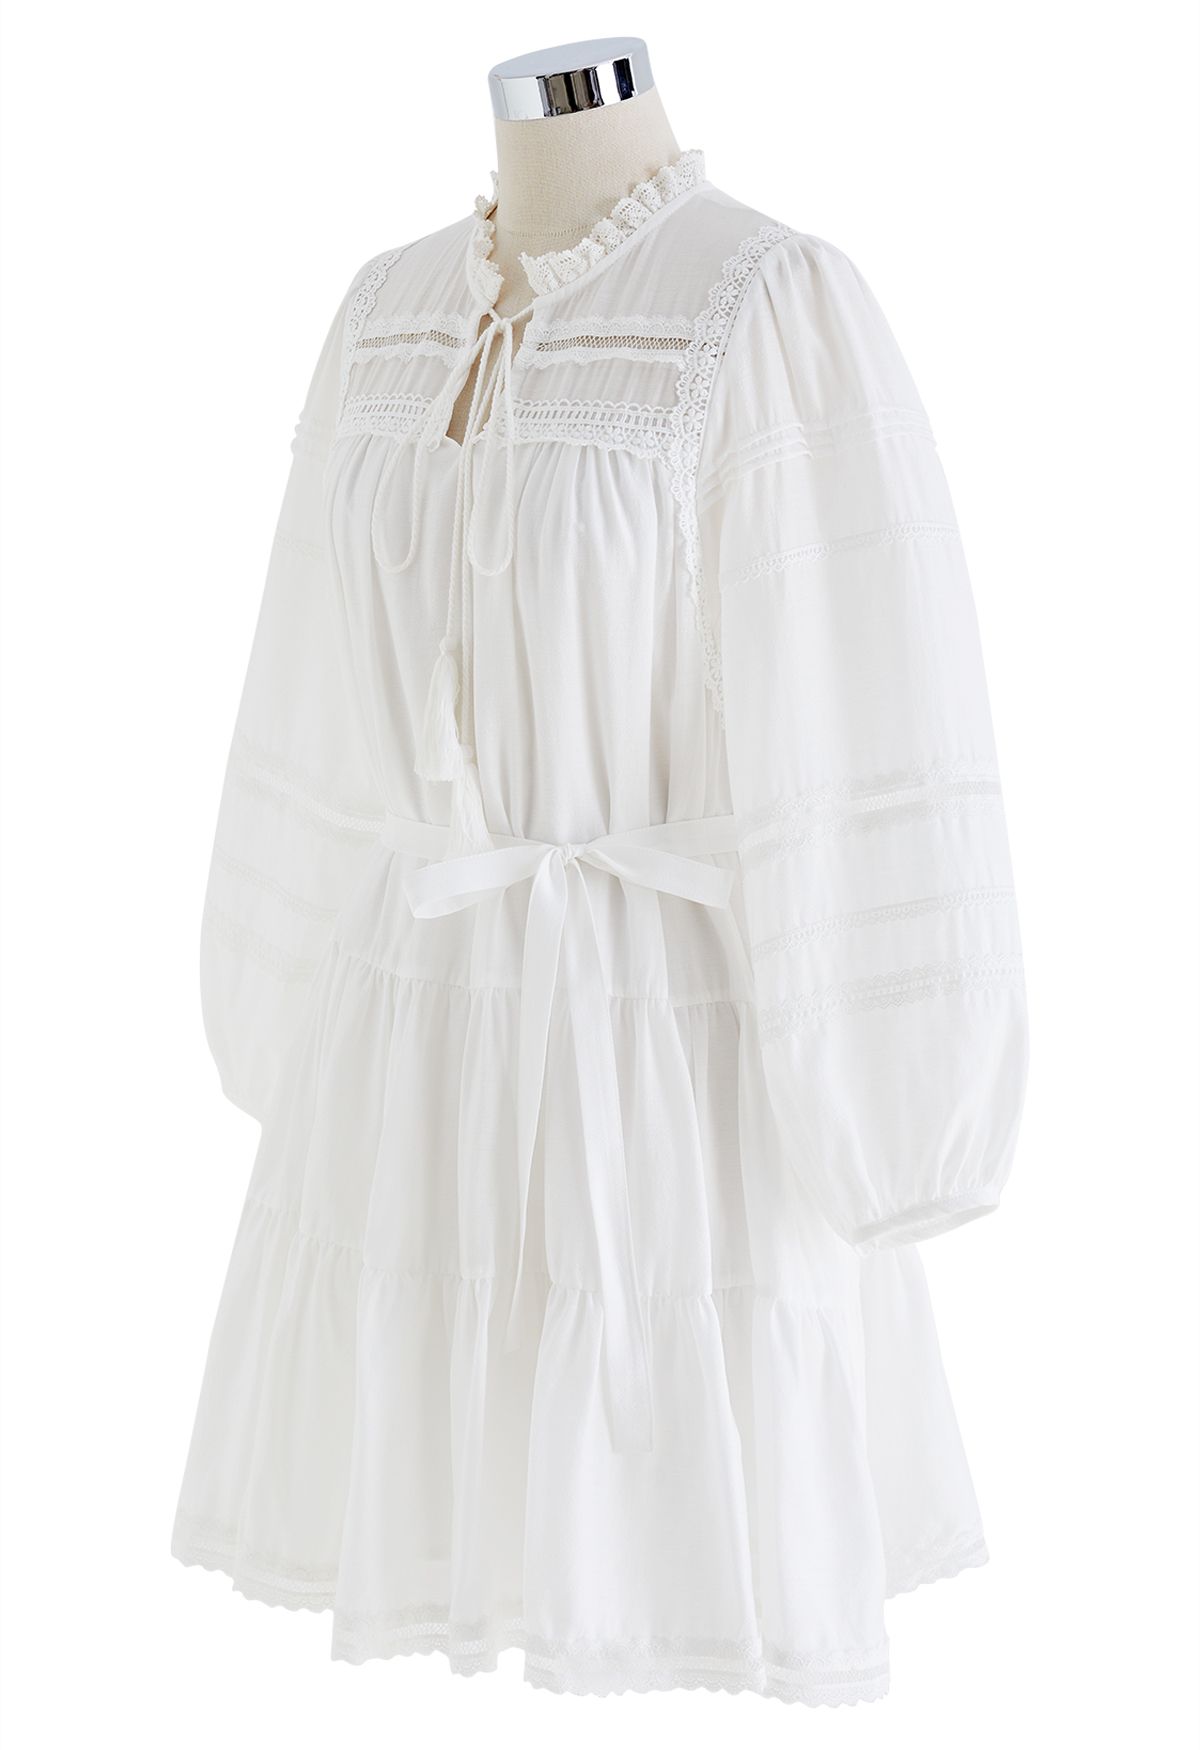 Belle robe blanche à manches bouffantes de déesse